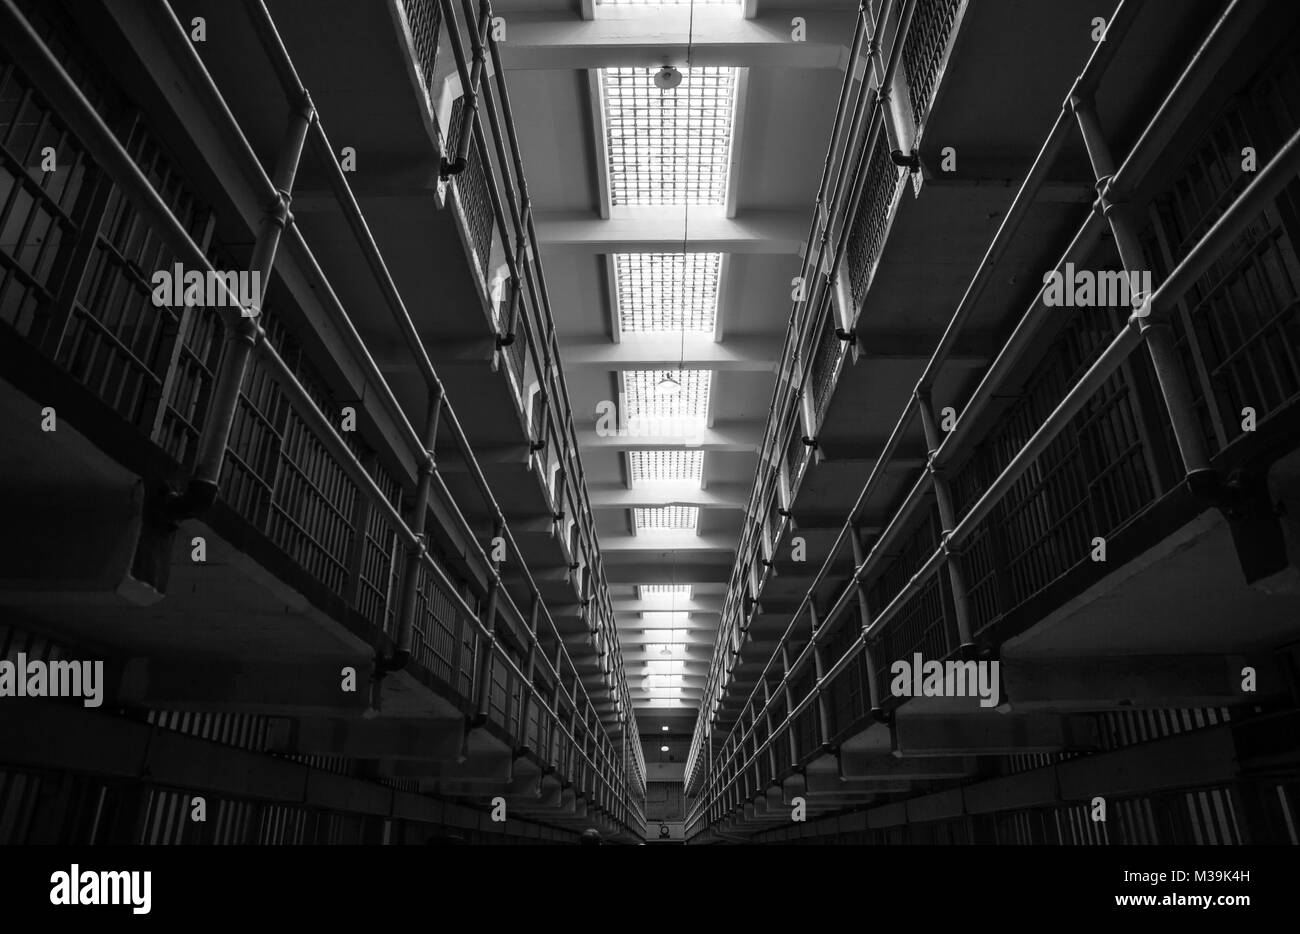 ALCATRAZ, Etats-Unis - 10 JUIN 2015 : couloir de la prison à l'intérieur du pénitencier d'Alcatraz, avec la rangée de chambres Banque D'Images